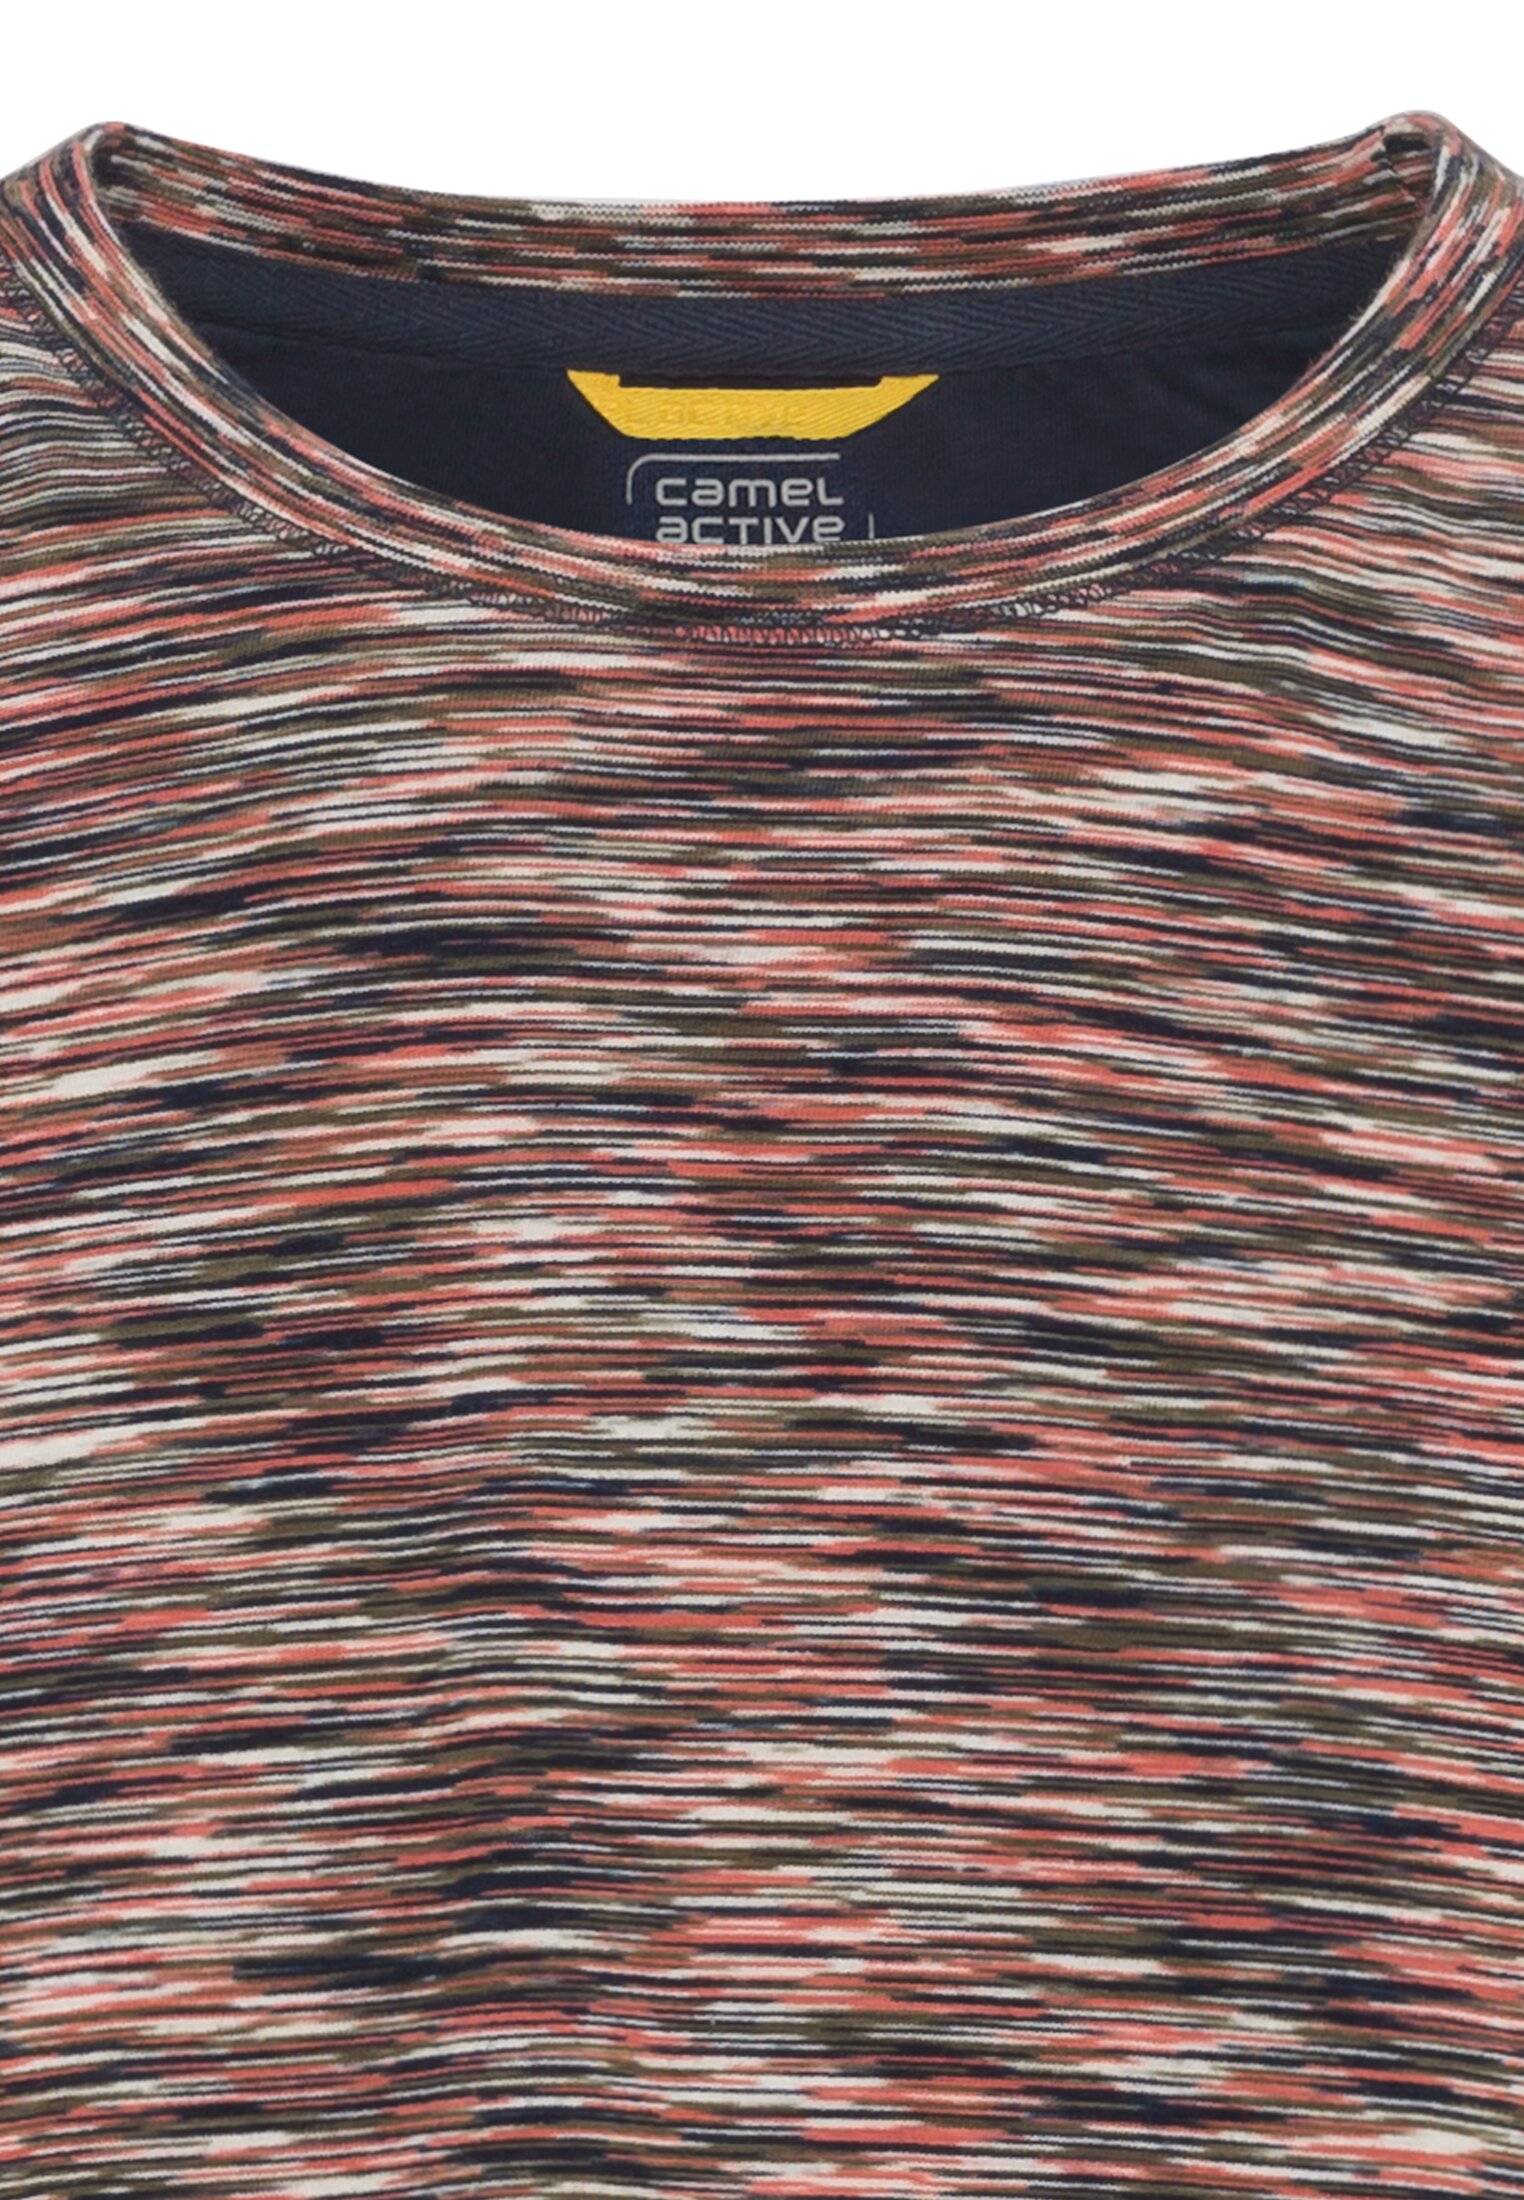 Мужская футболка Camel Active, коралловая, цвет коралловый, размер 48 - фото 3